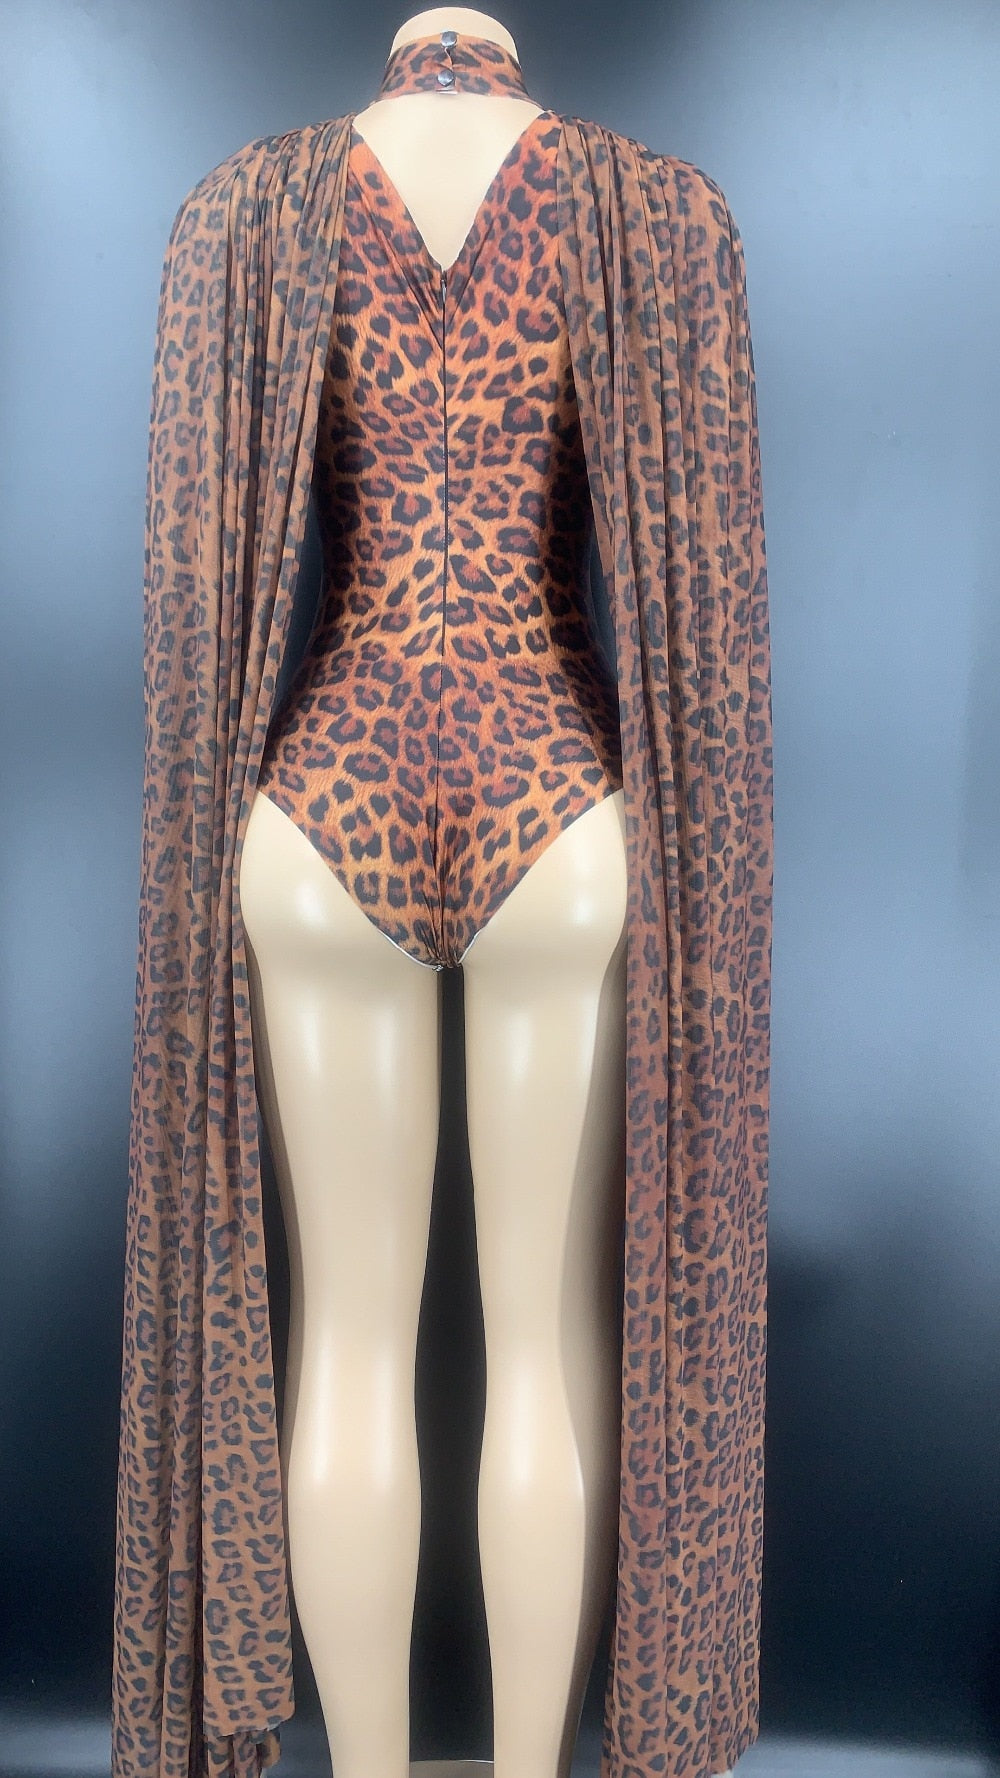 Sue Preme Leopard Print Outfit